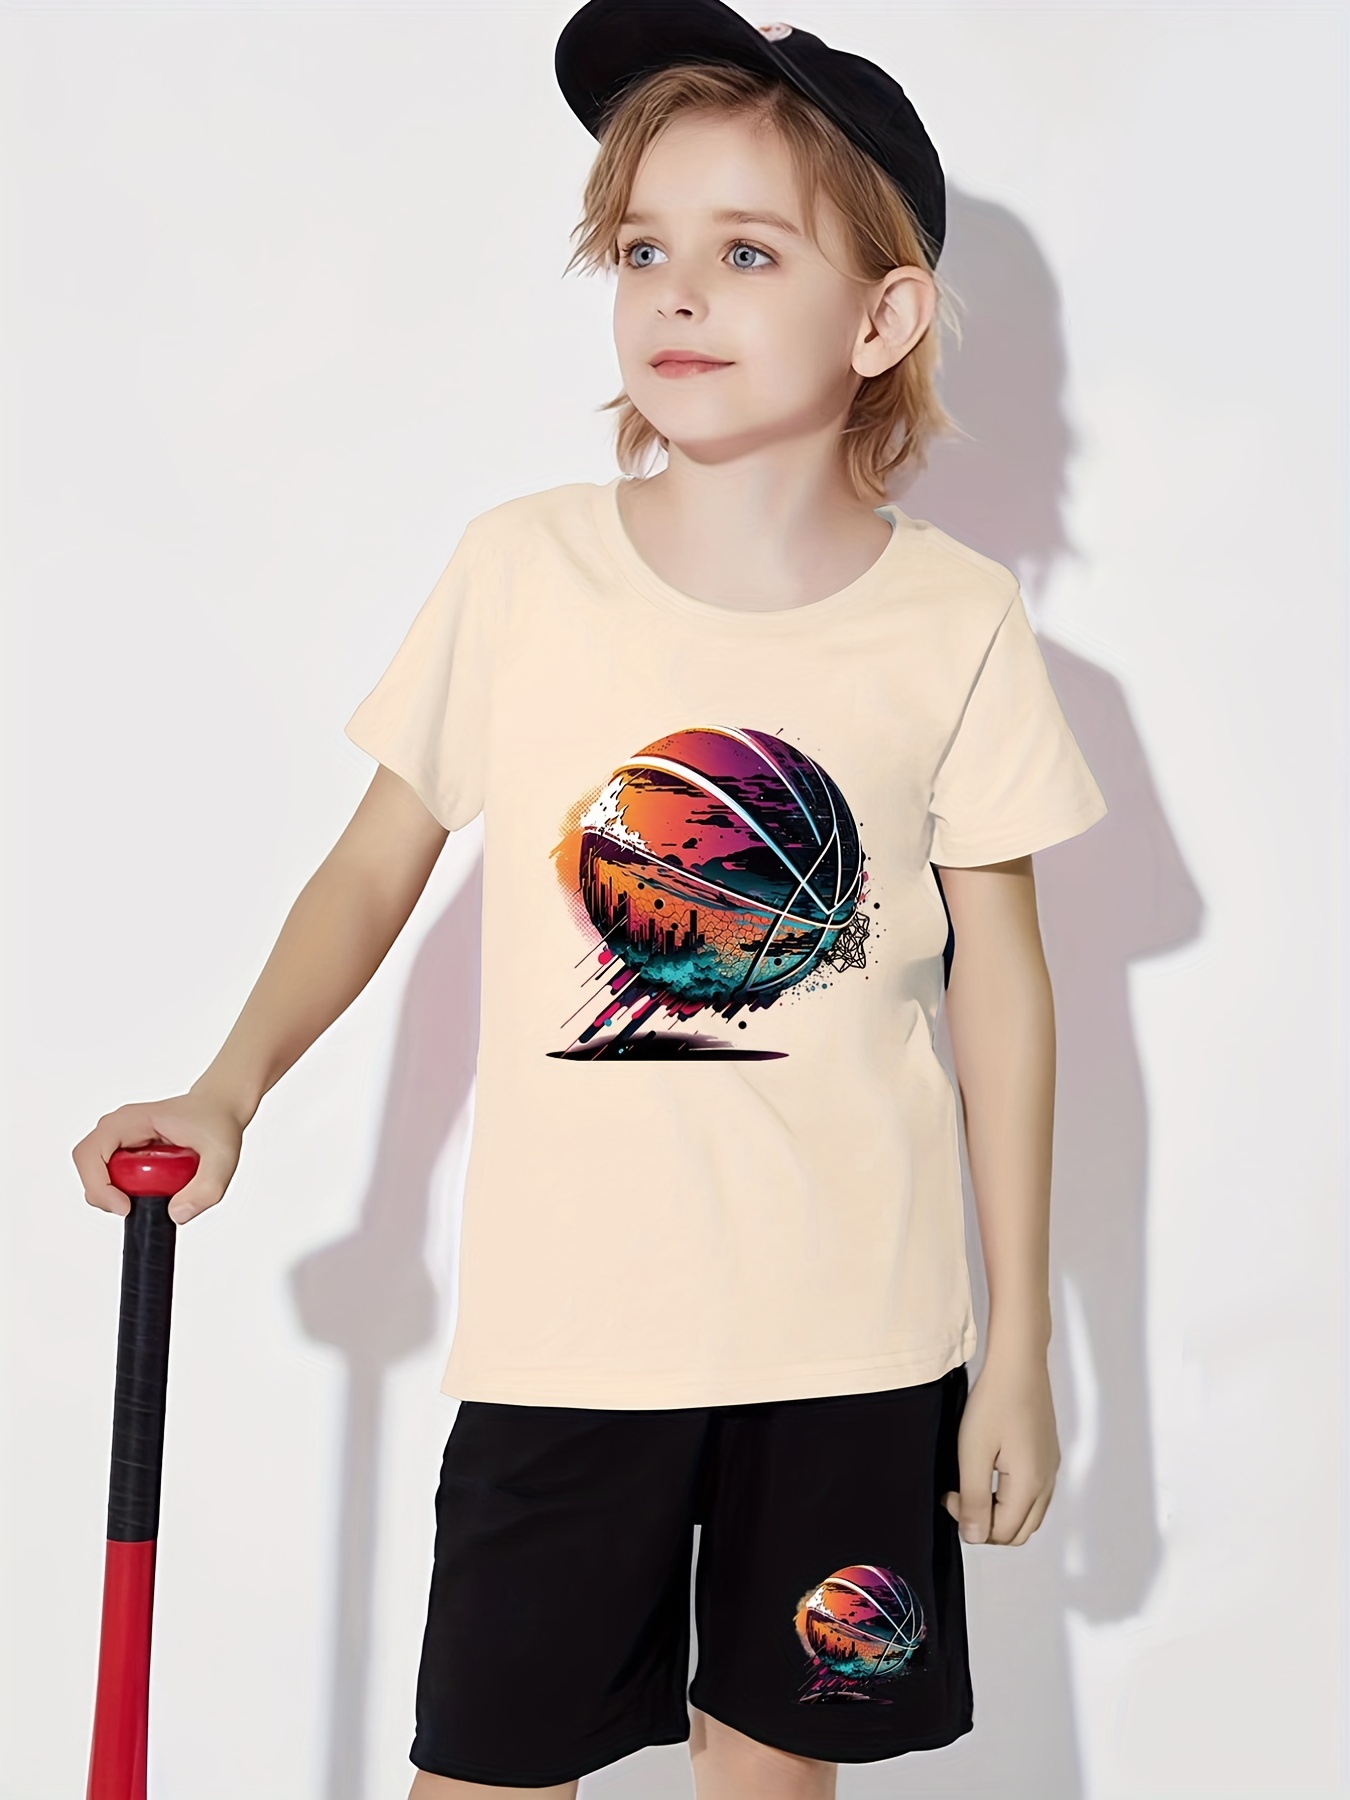 Camiseta Baloncesto Niño,Trajes Baloncesto Niños,Conjunto